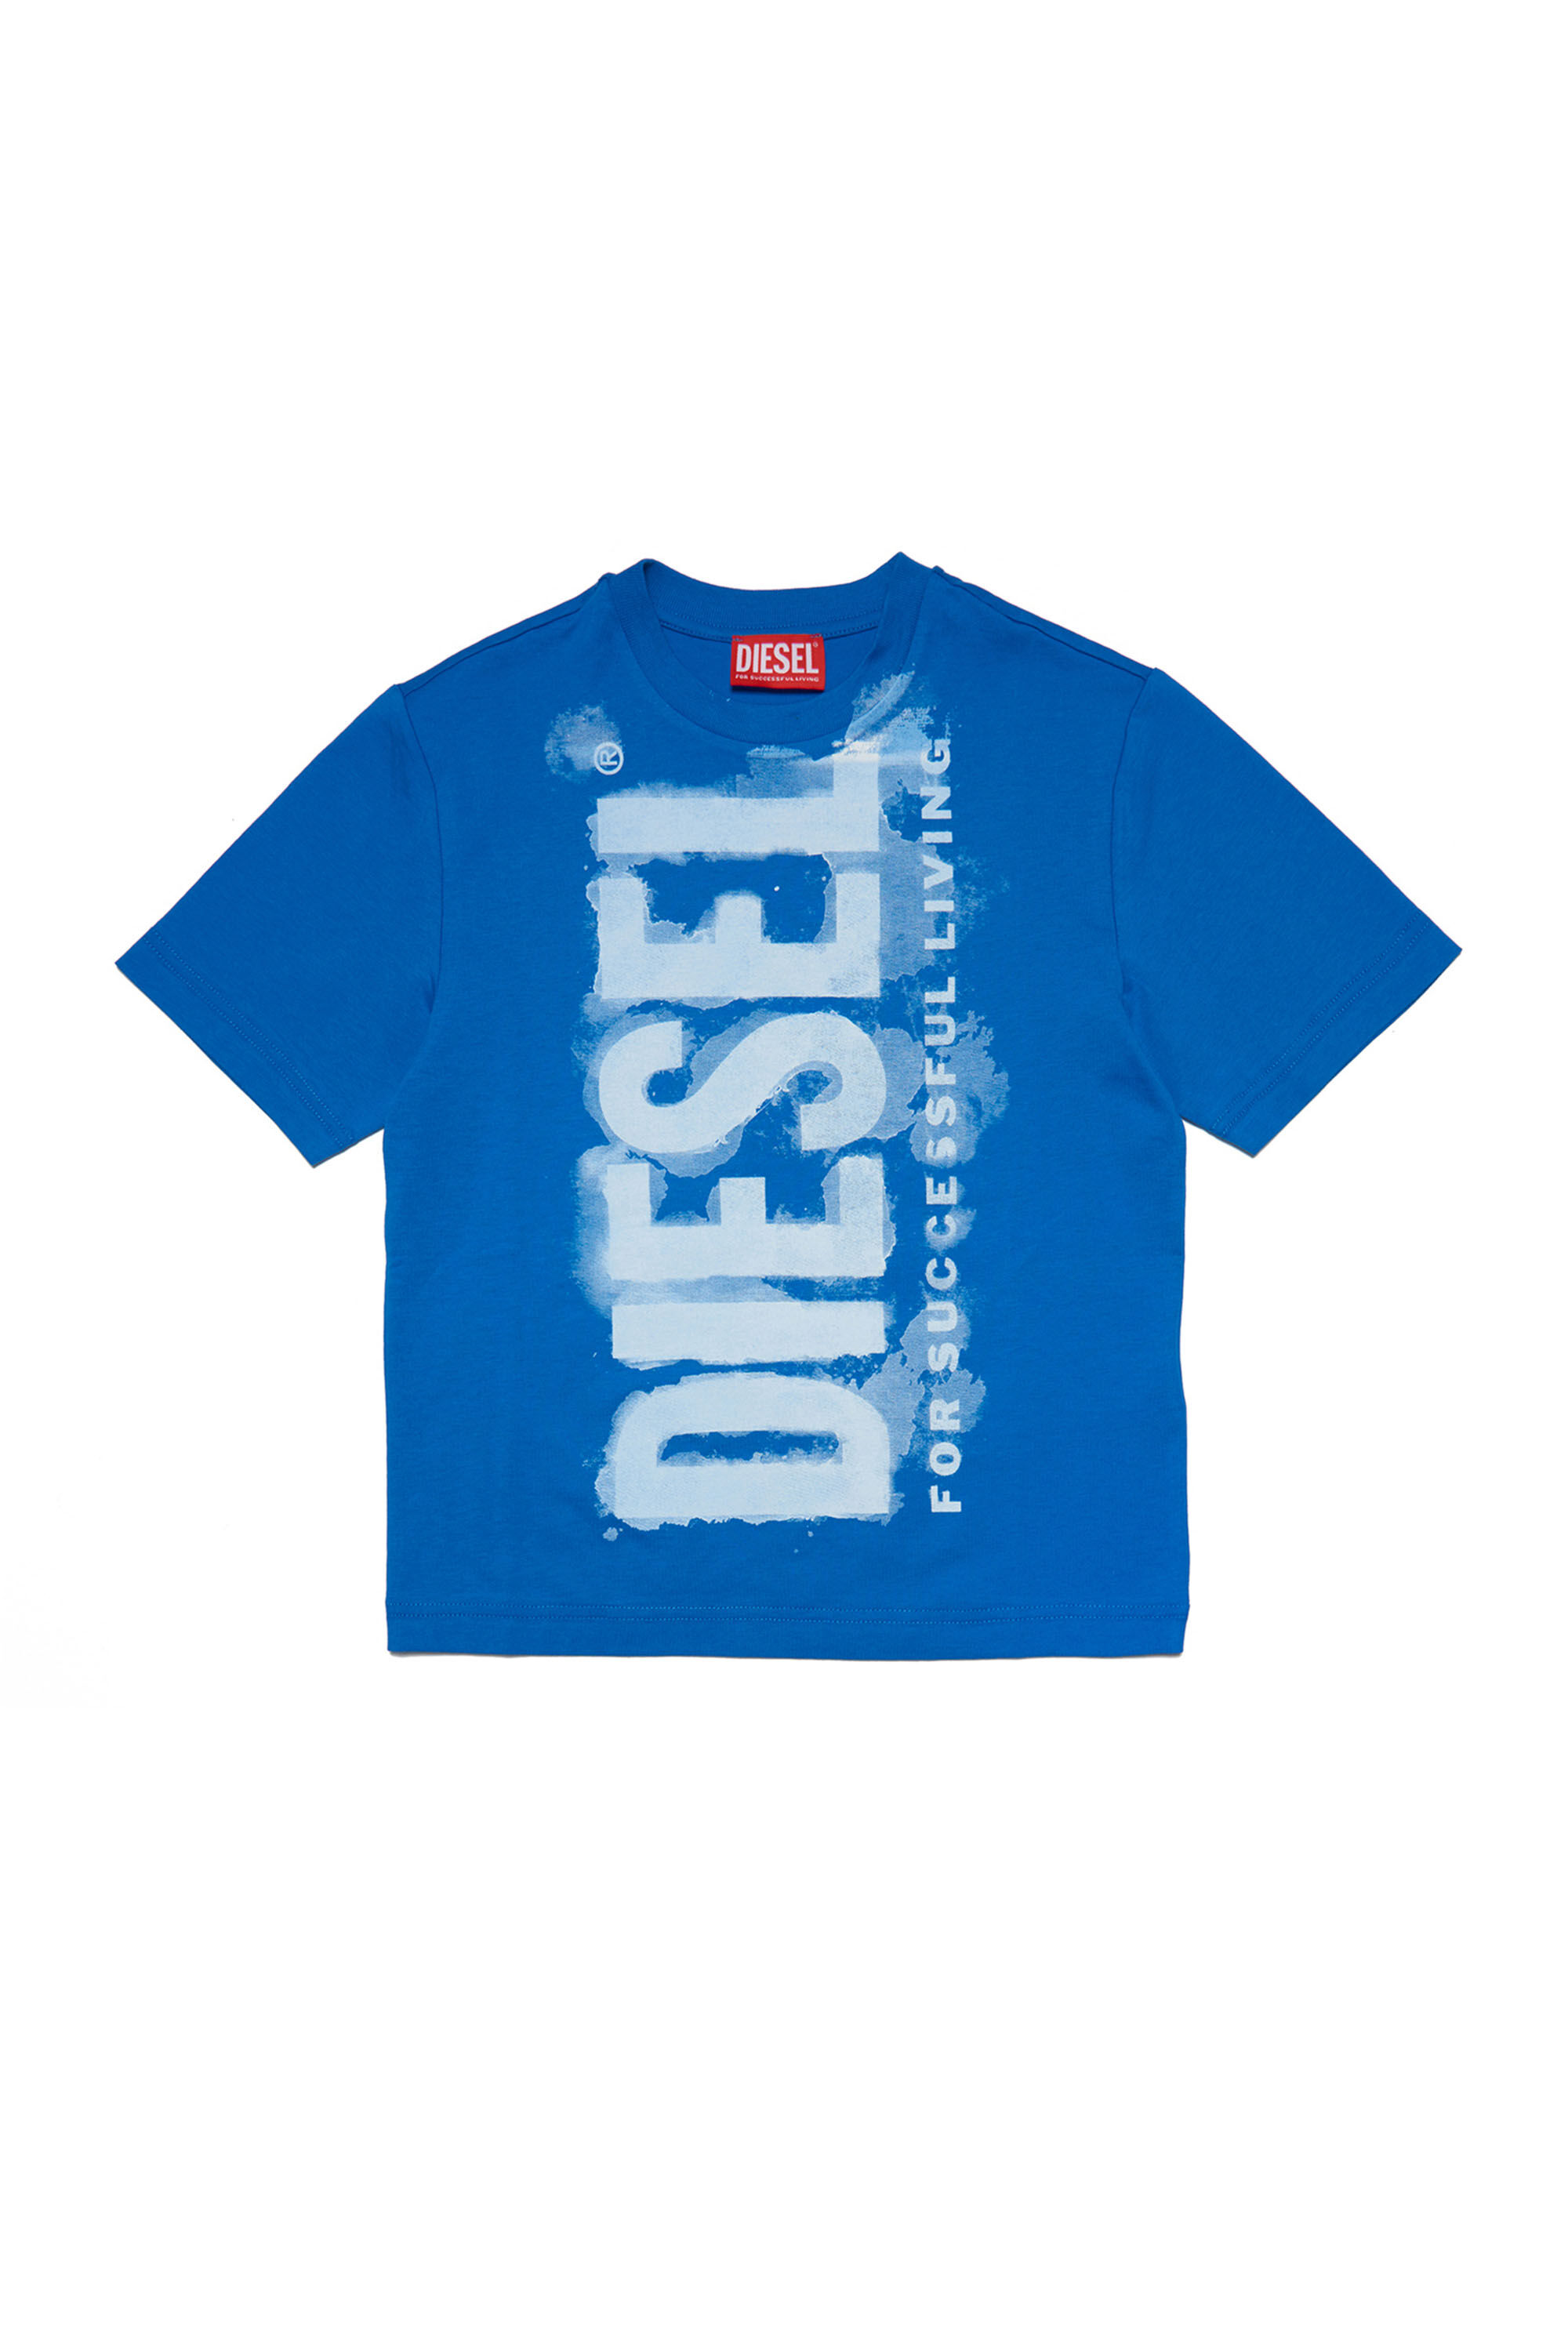 Diesel - TJUSTE16 OVER, Azul - Image 1